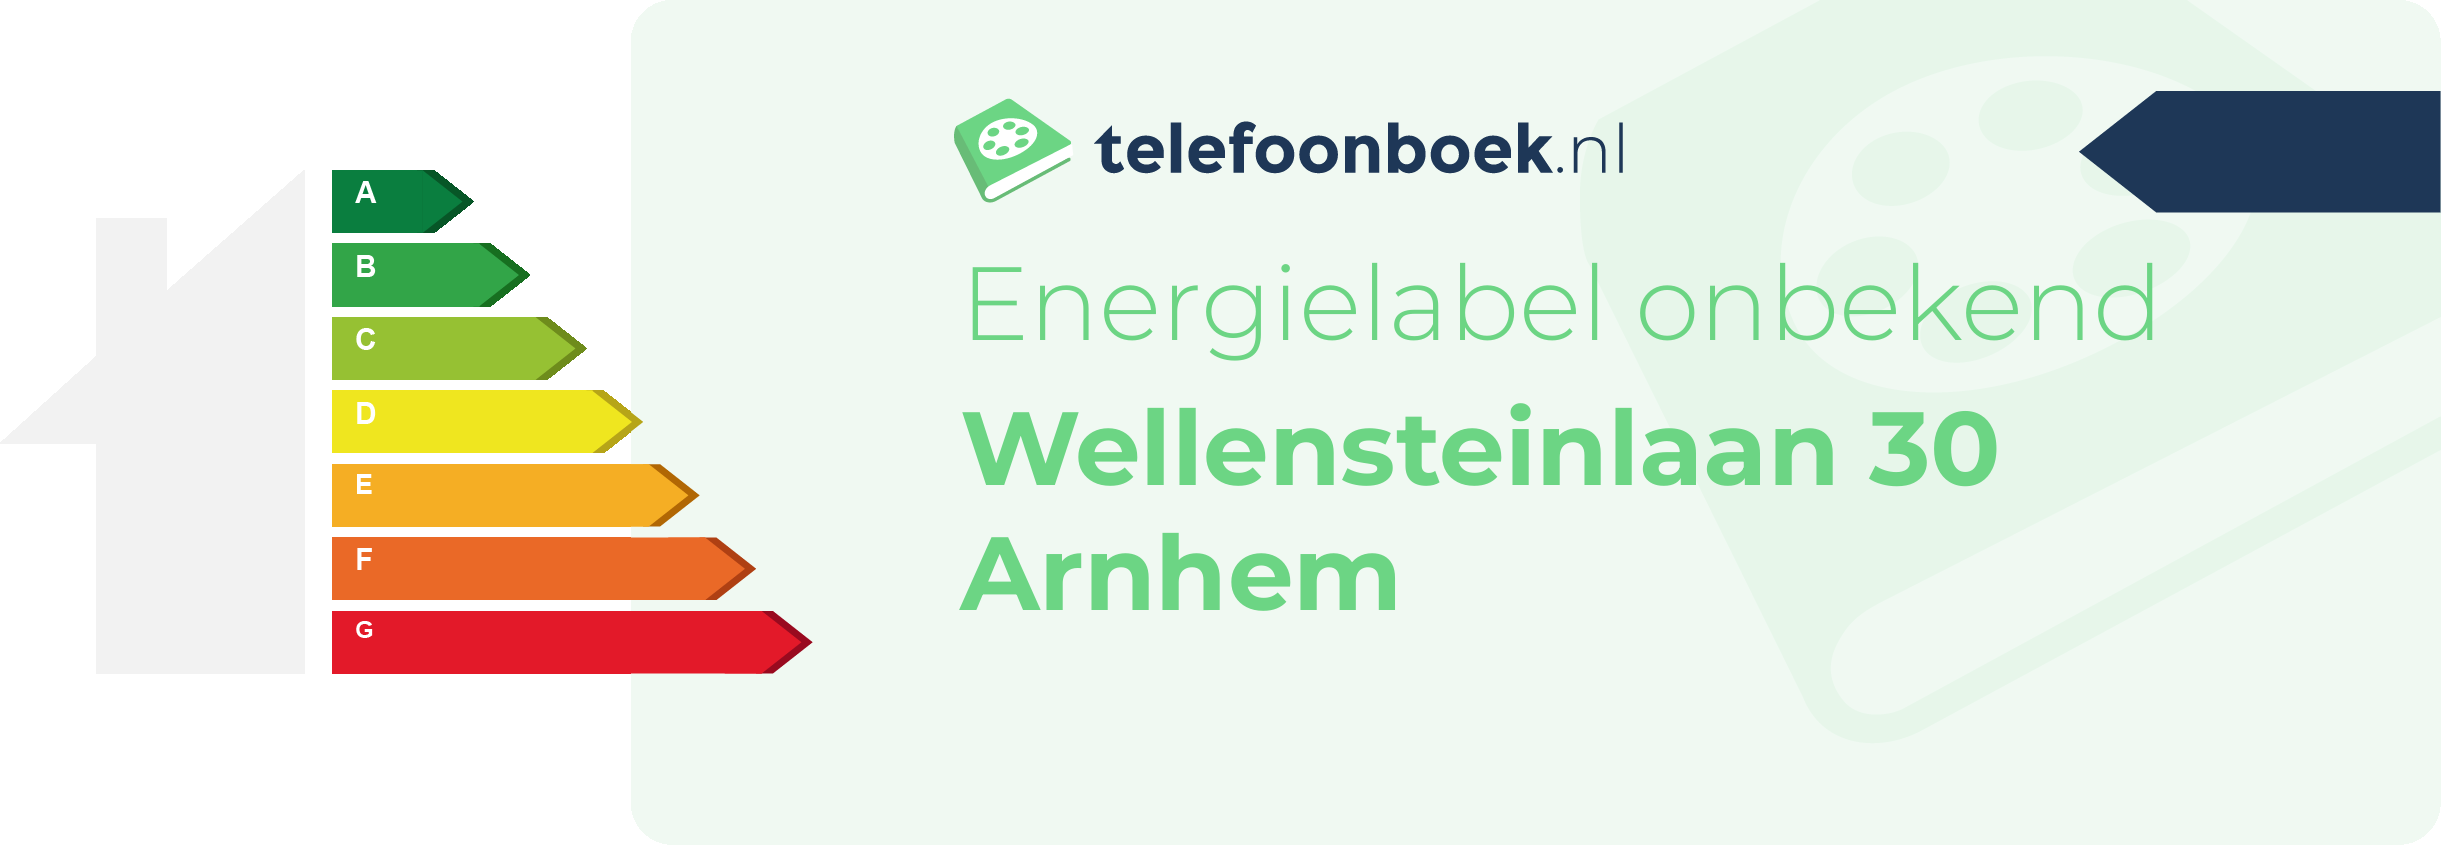 Energielabel Wellensteinlaan 30 Arnhem